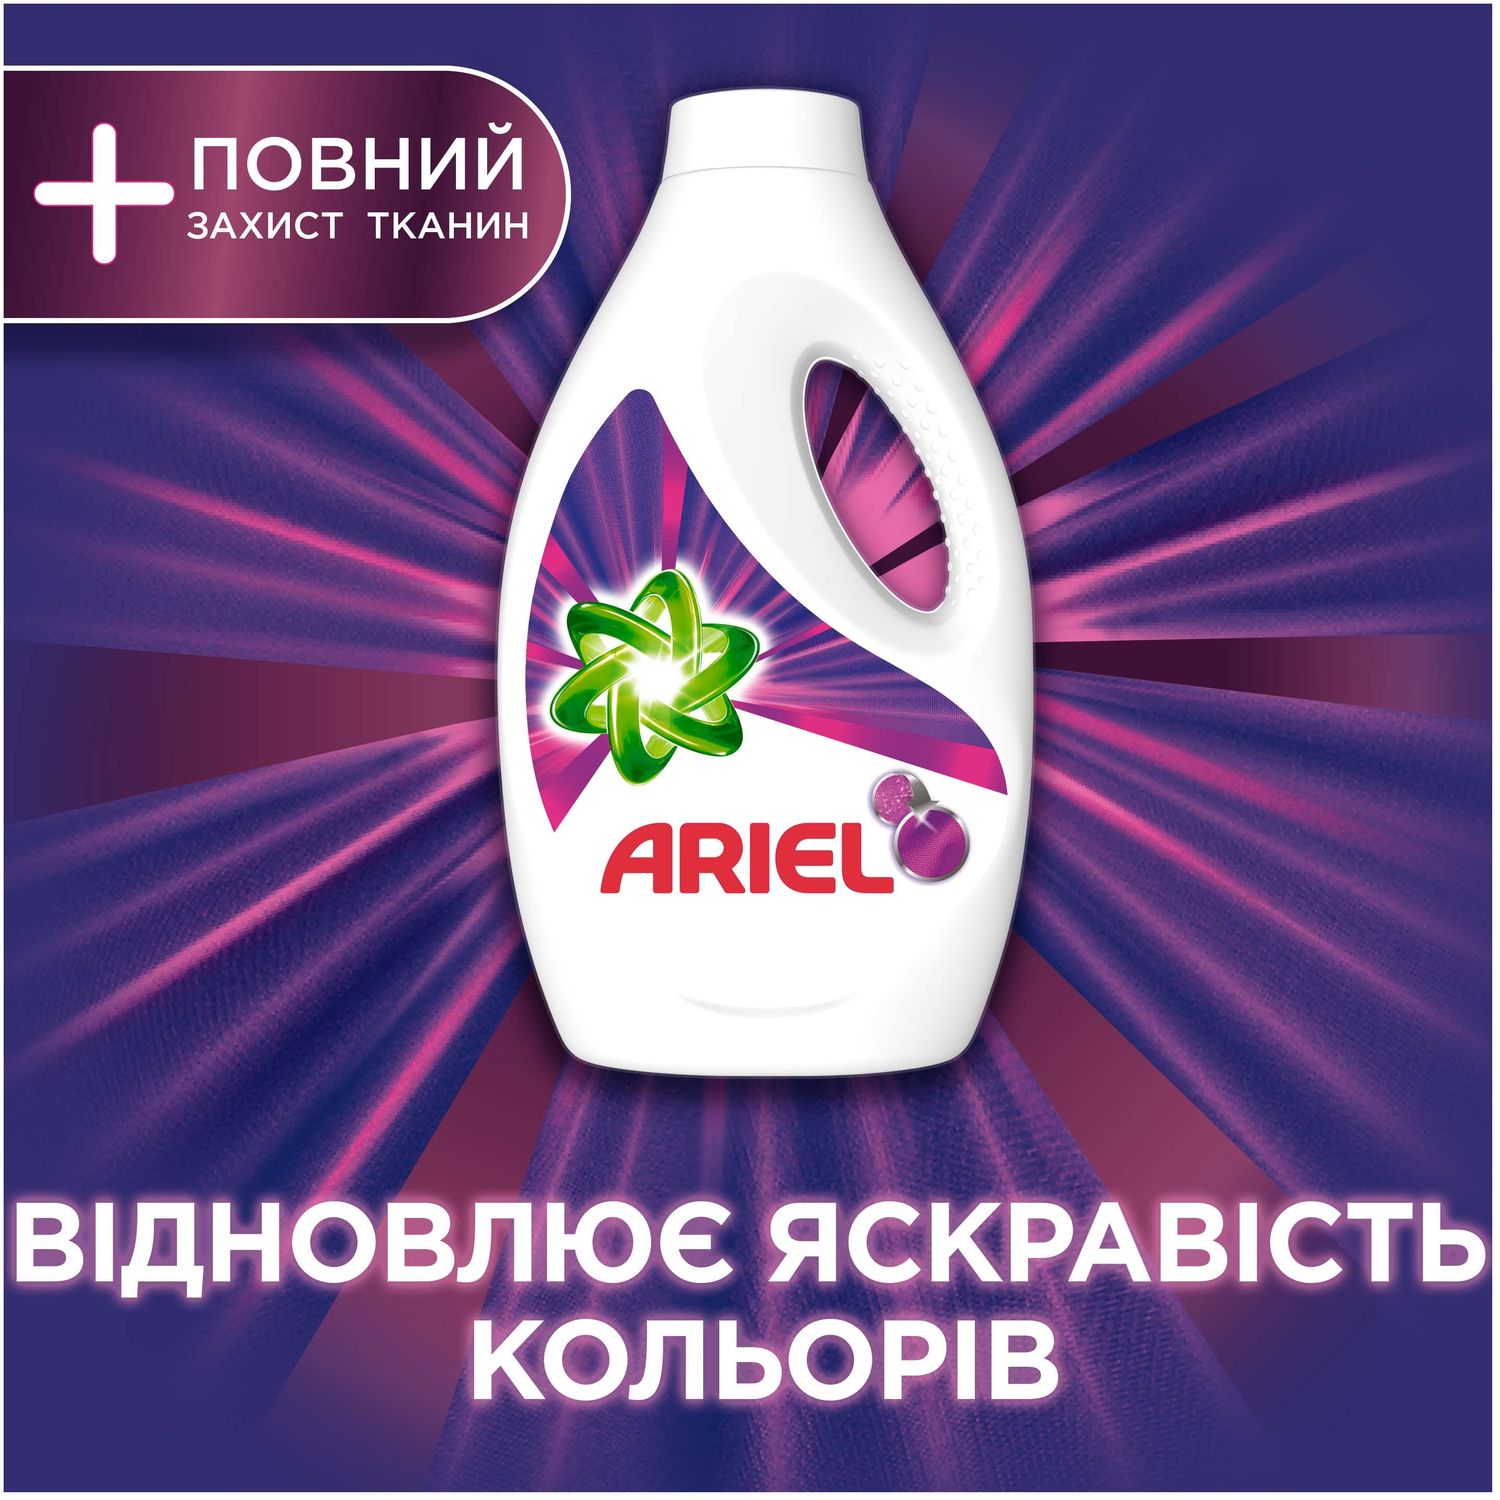 Гель для прання Ariel Color + Захист волокон Повний захист тканини 1.95 л - фото 5